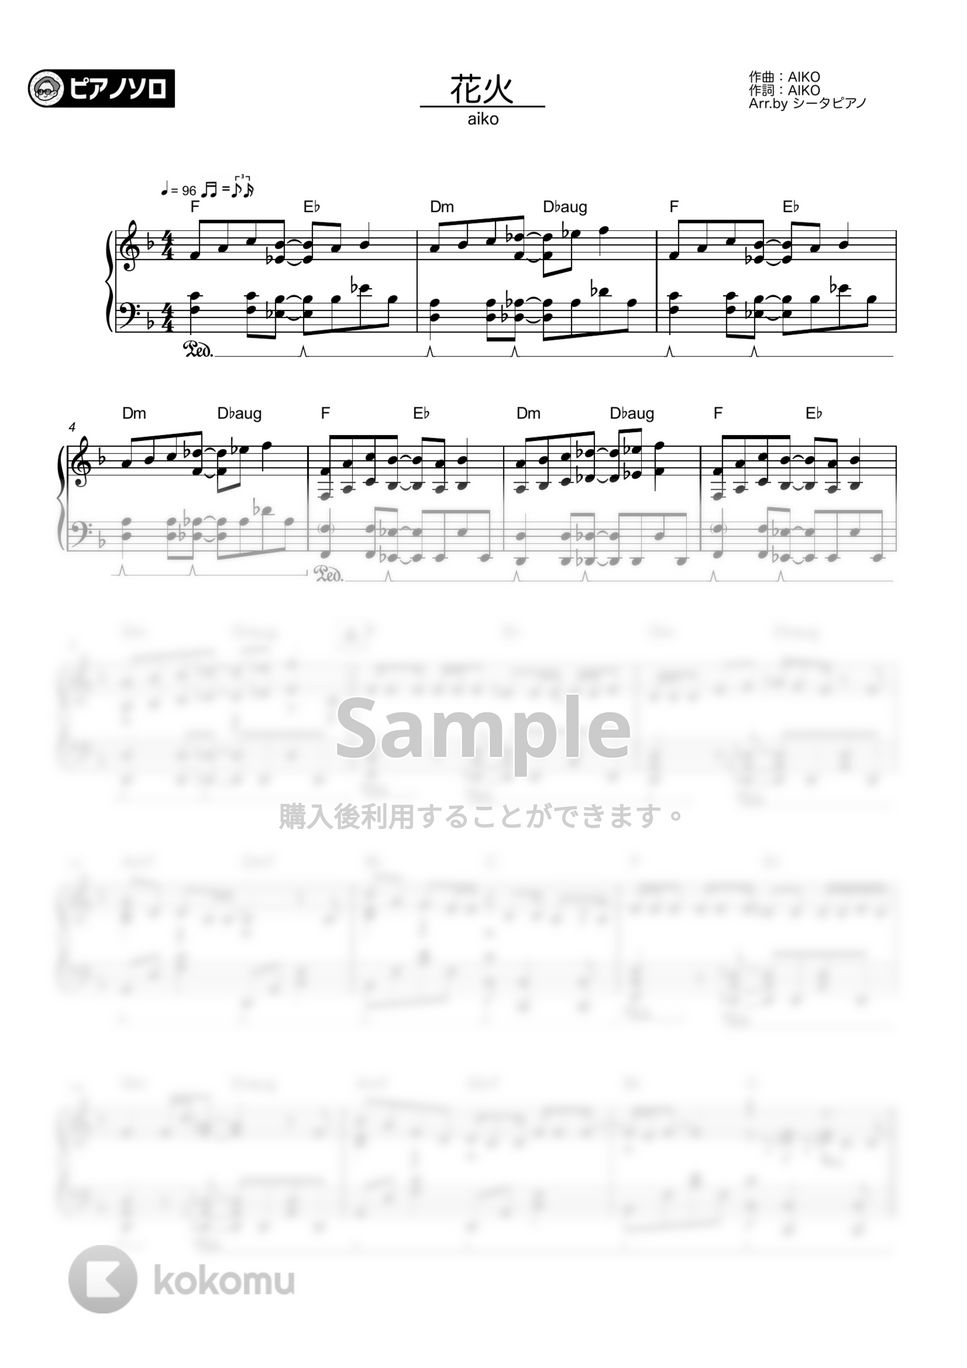 aiko - 花火 by シータピアノ